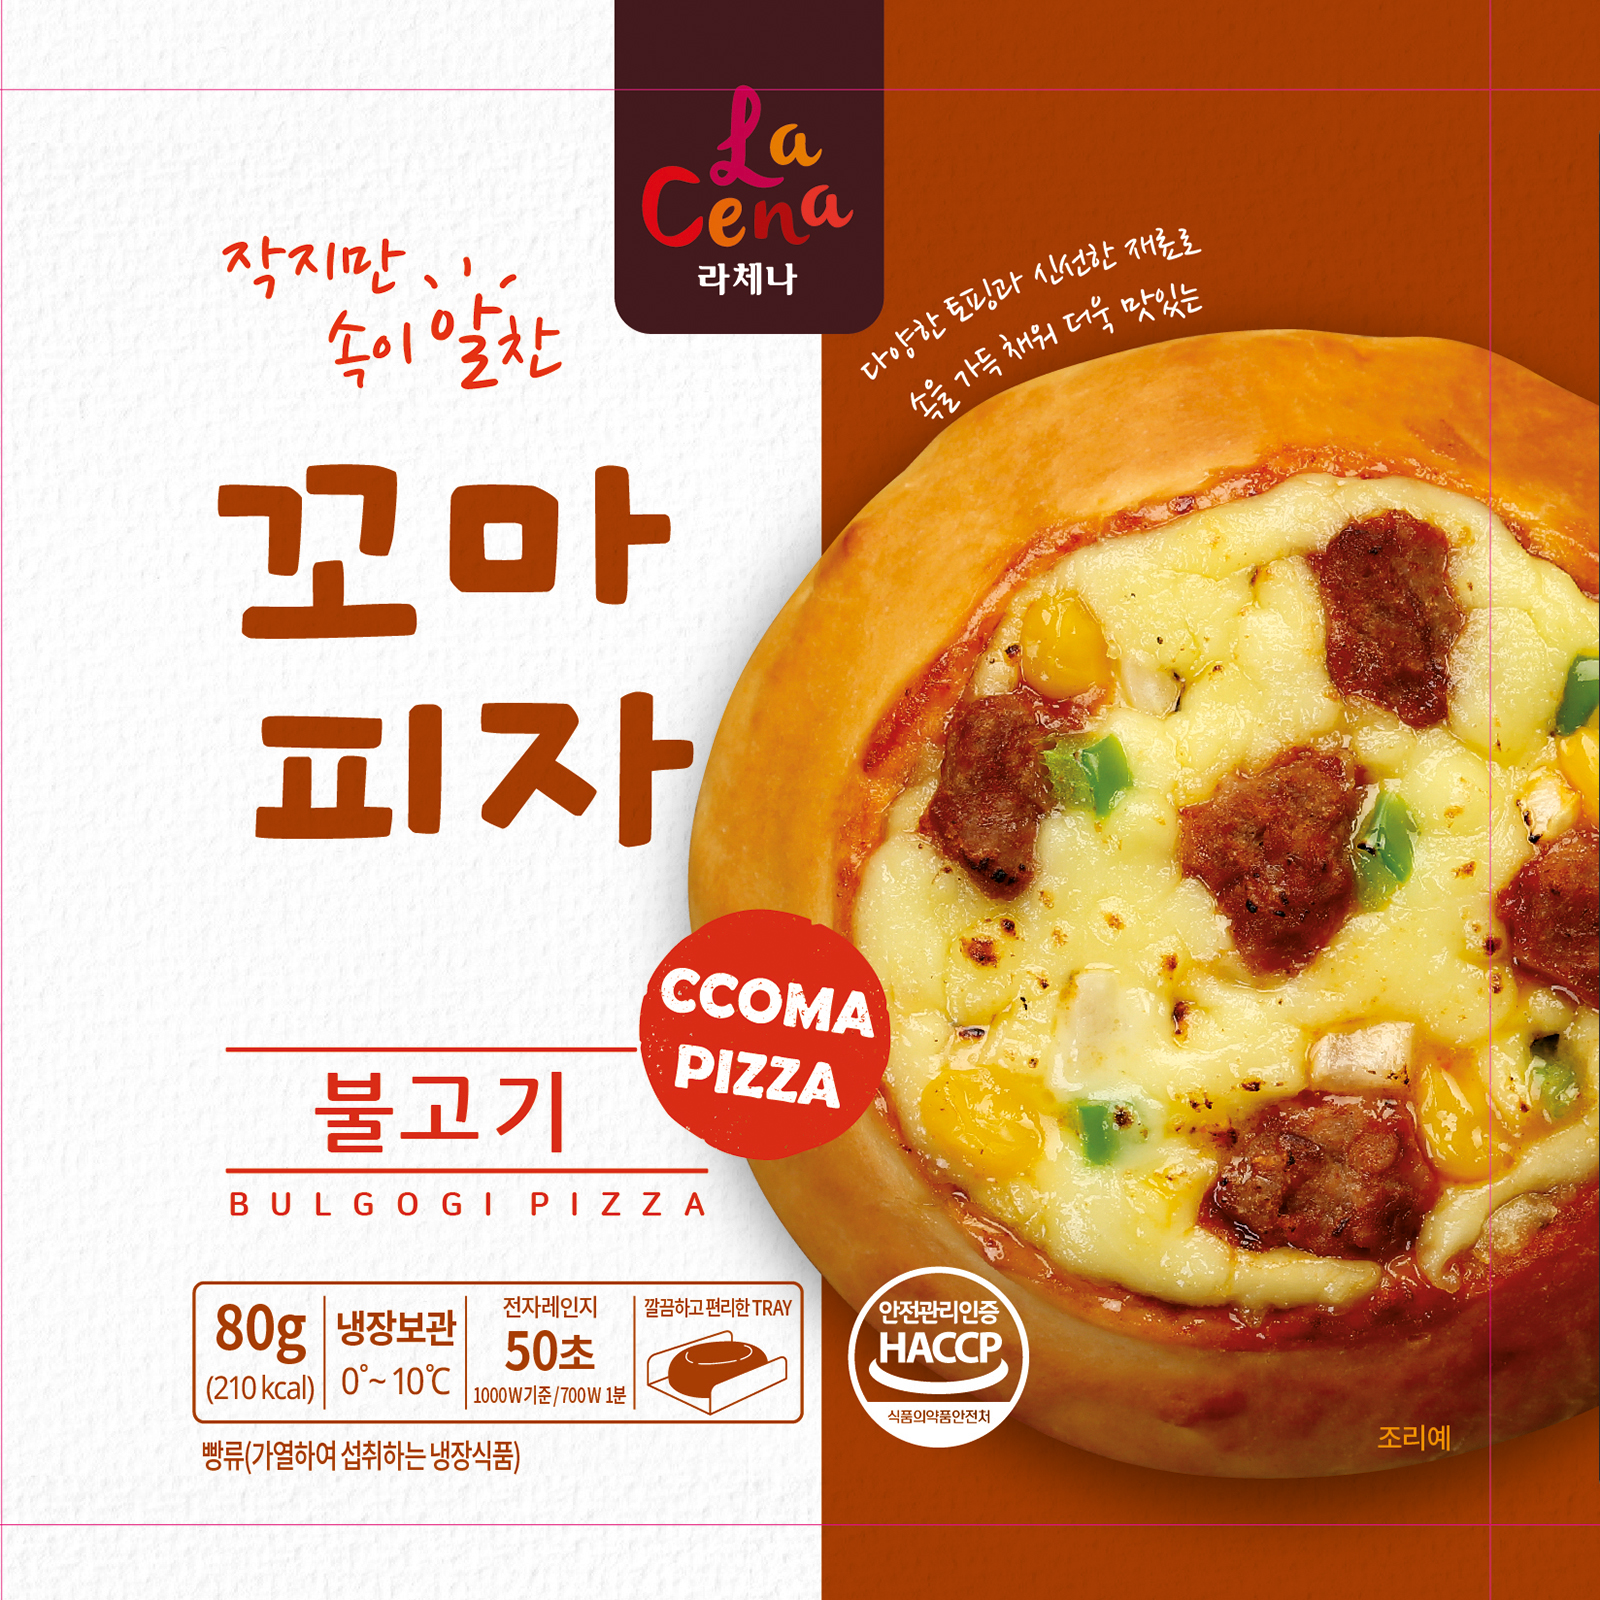 KKoma pizza _mini pizza_ _ Bulgogi